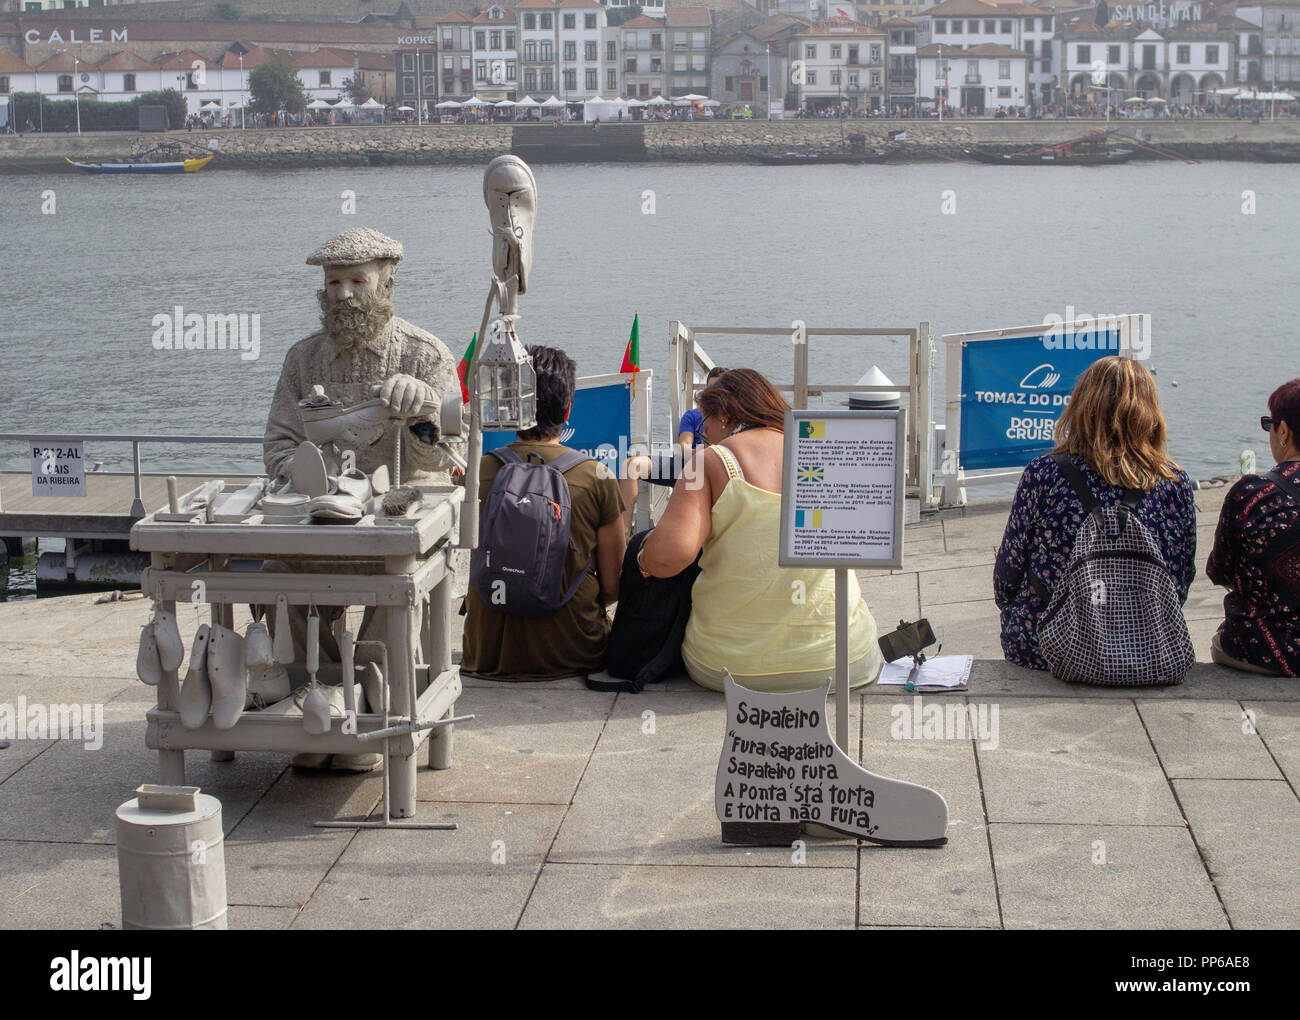 Porto, Portugal. Einer der vielen Straßenkünstler, die der Uferstraße des Douro-Flusses in Porto, Portugal, Farbe verleihen. Stockfoto